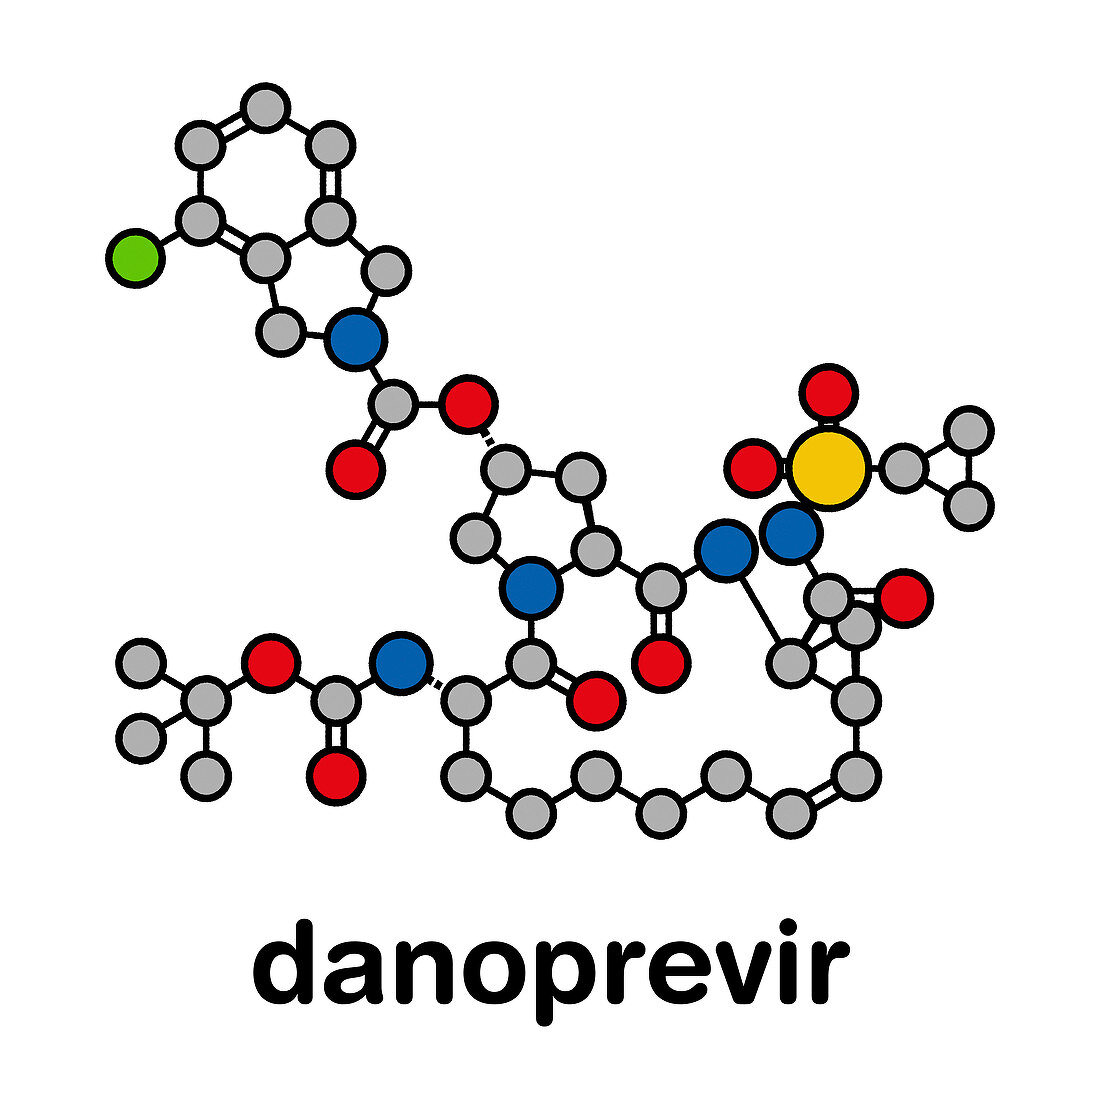 Danoprevir hepatitis C antiviral drug molecule